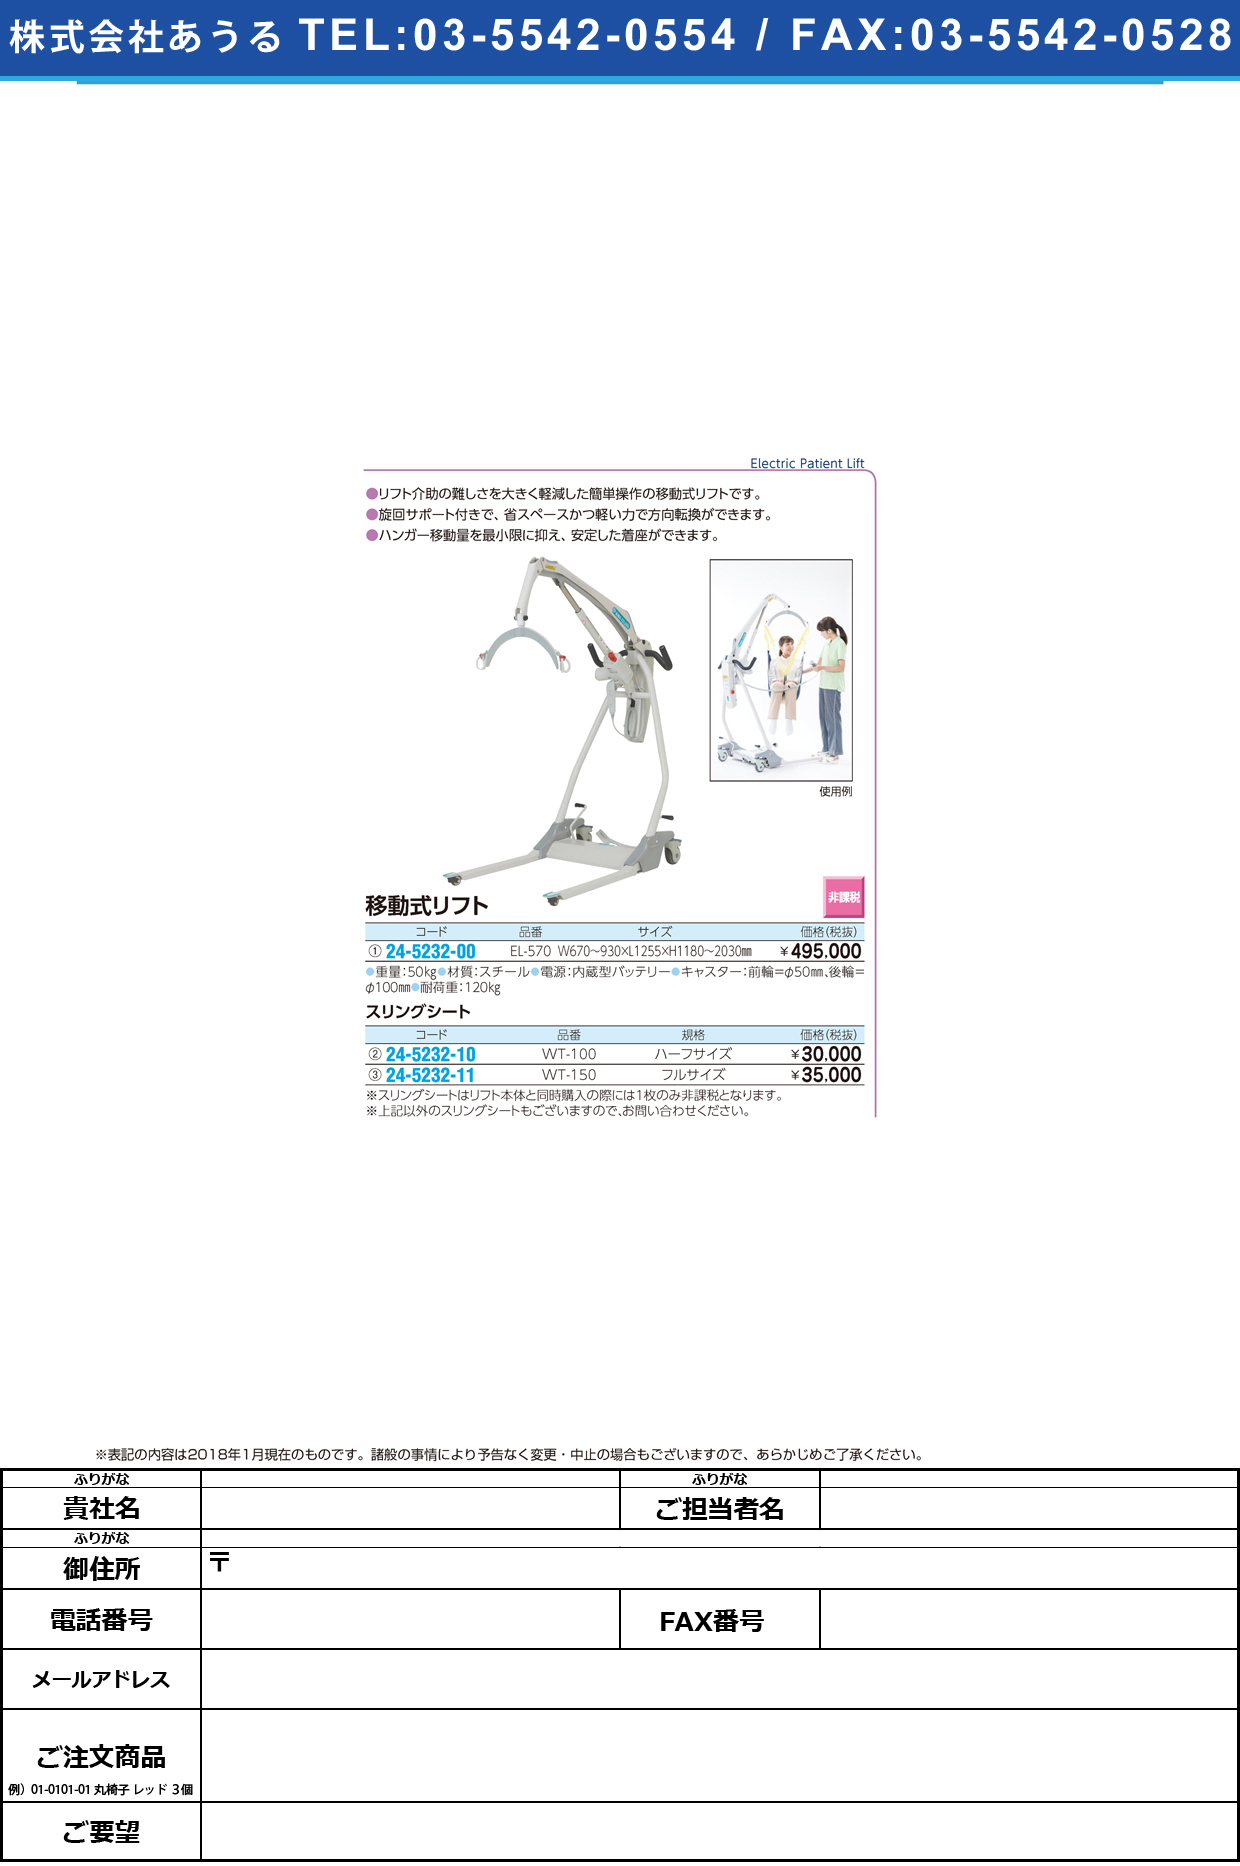 (24-5232-11)スリングシート WT-150(ﾌﾙｻｲｽﾞ) ｽﾘﾝｸﾞｼｰﾄ(いうら)【1枚単位】【2018年カタログ商品】